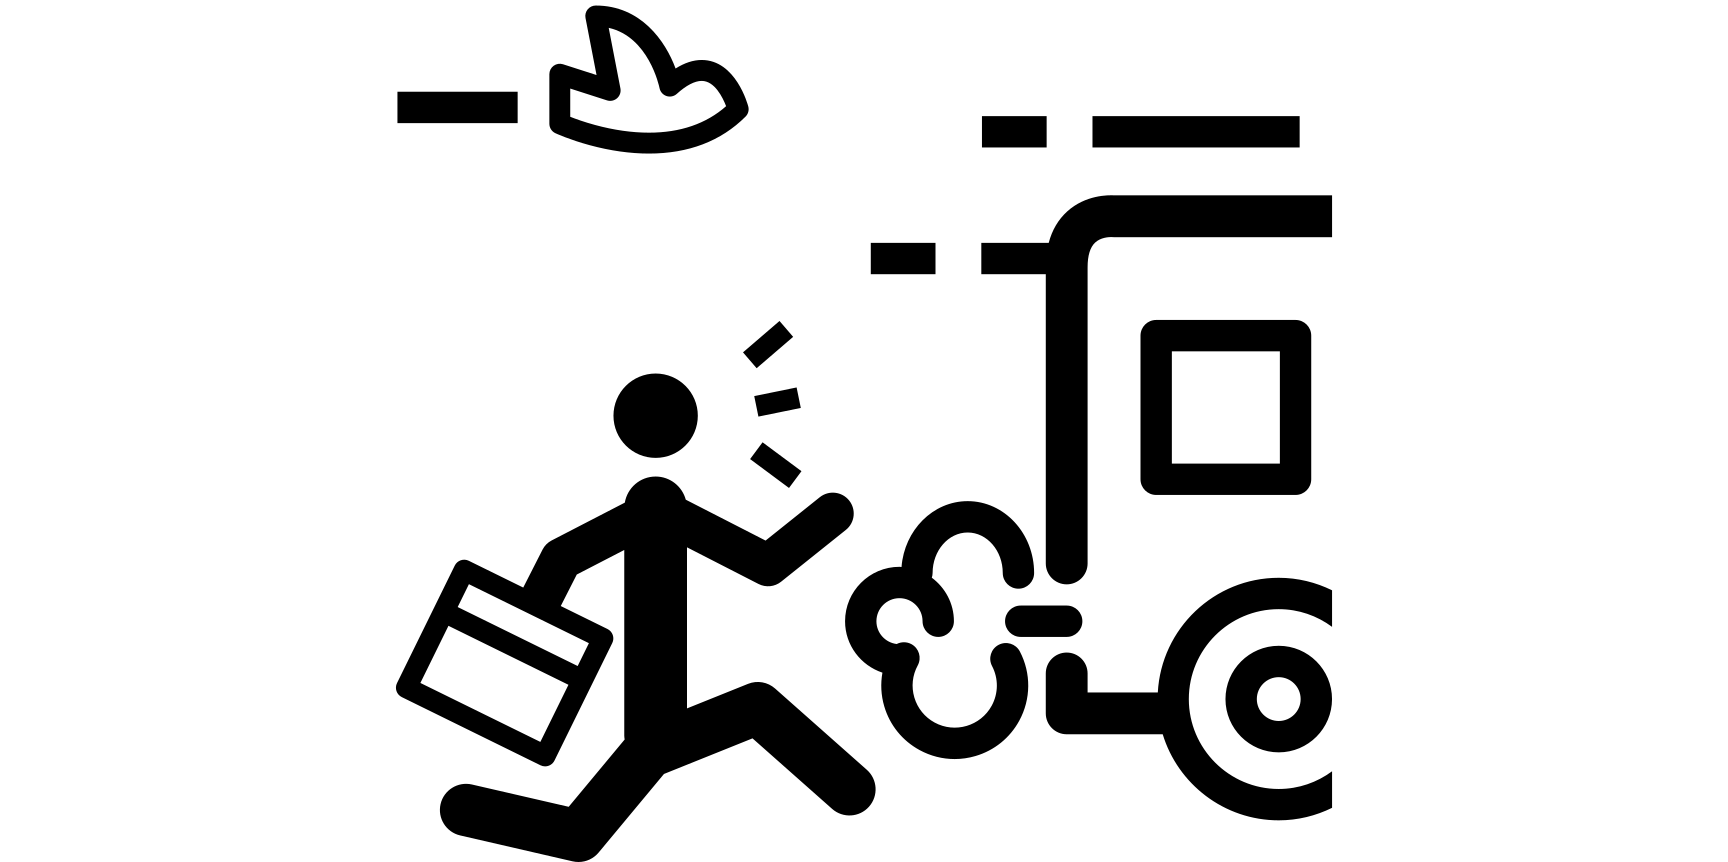 Vergrösserte Ansicht: Spät dran ( Symbol: icon4yu / Noun Project )